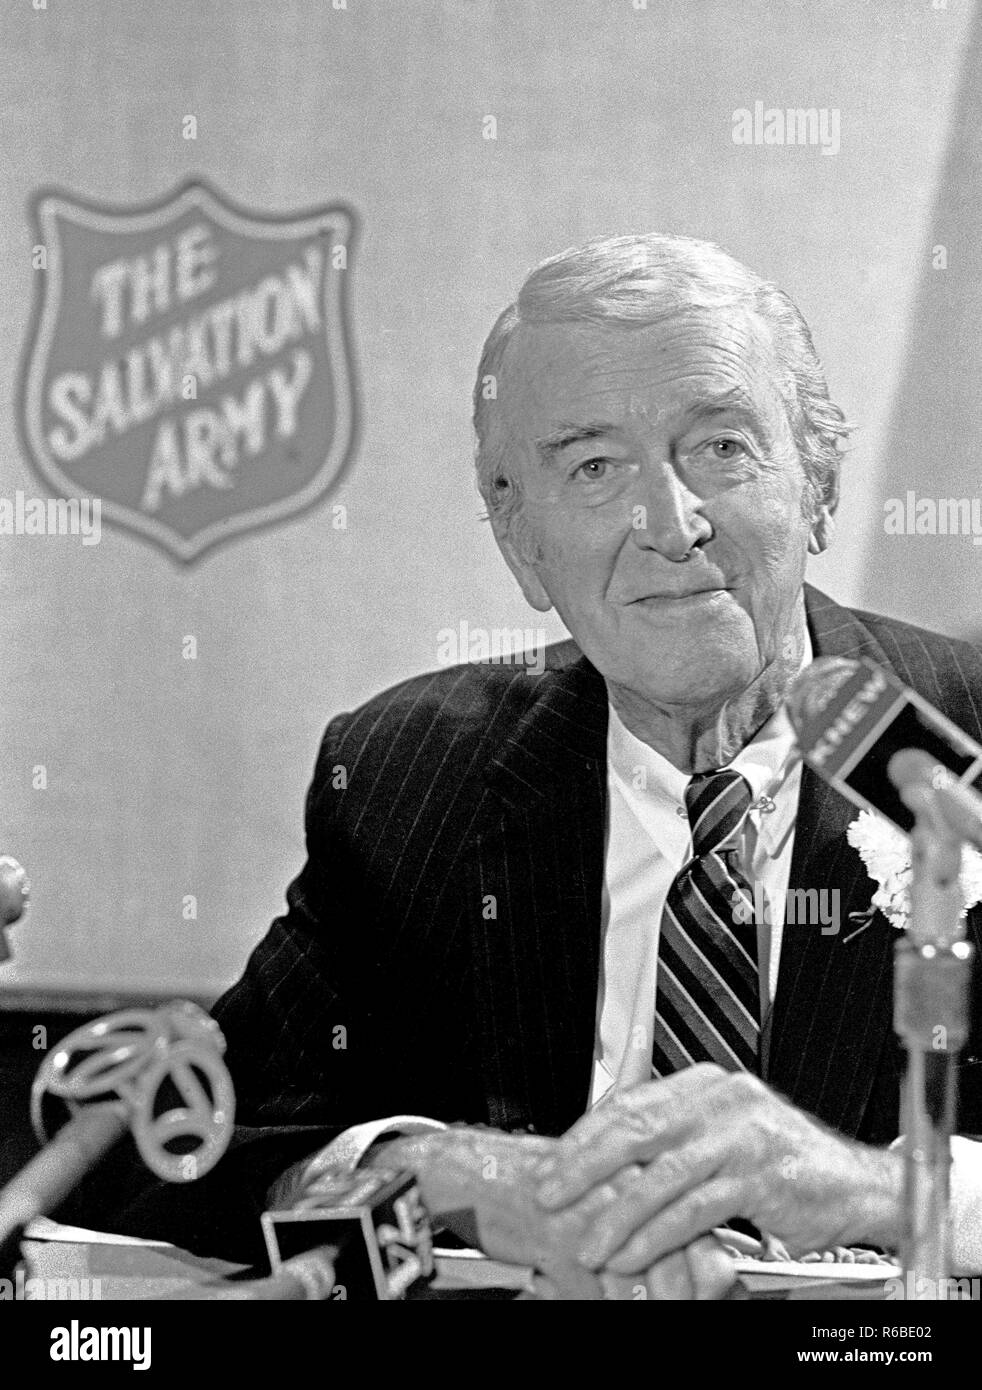 Acteur de cinéma américain, James Stuart parlant à San Francisco dans les années 80, à l'appui de l'Armée du Salut Banque D'Images